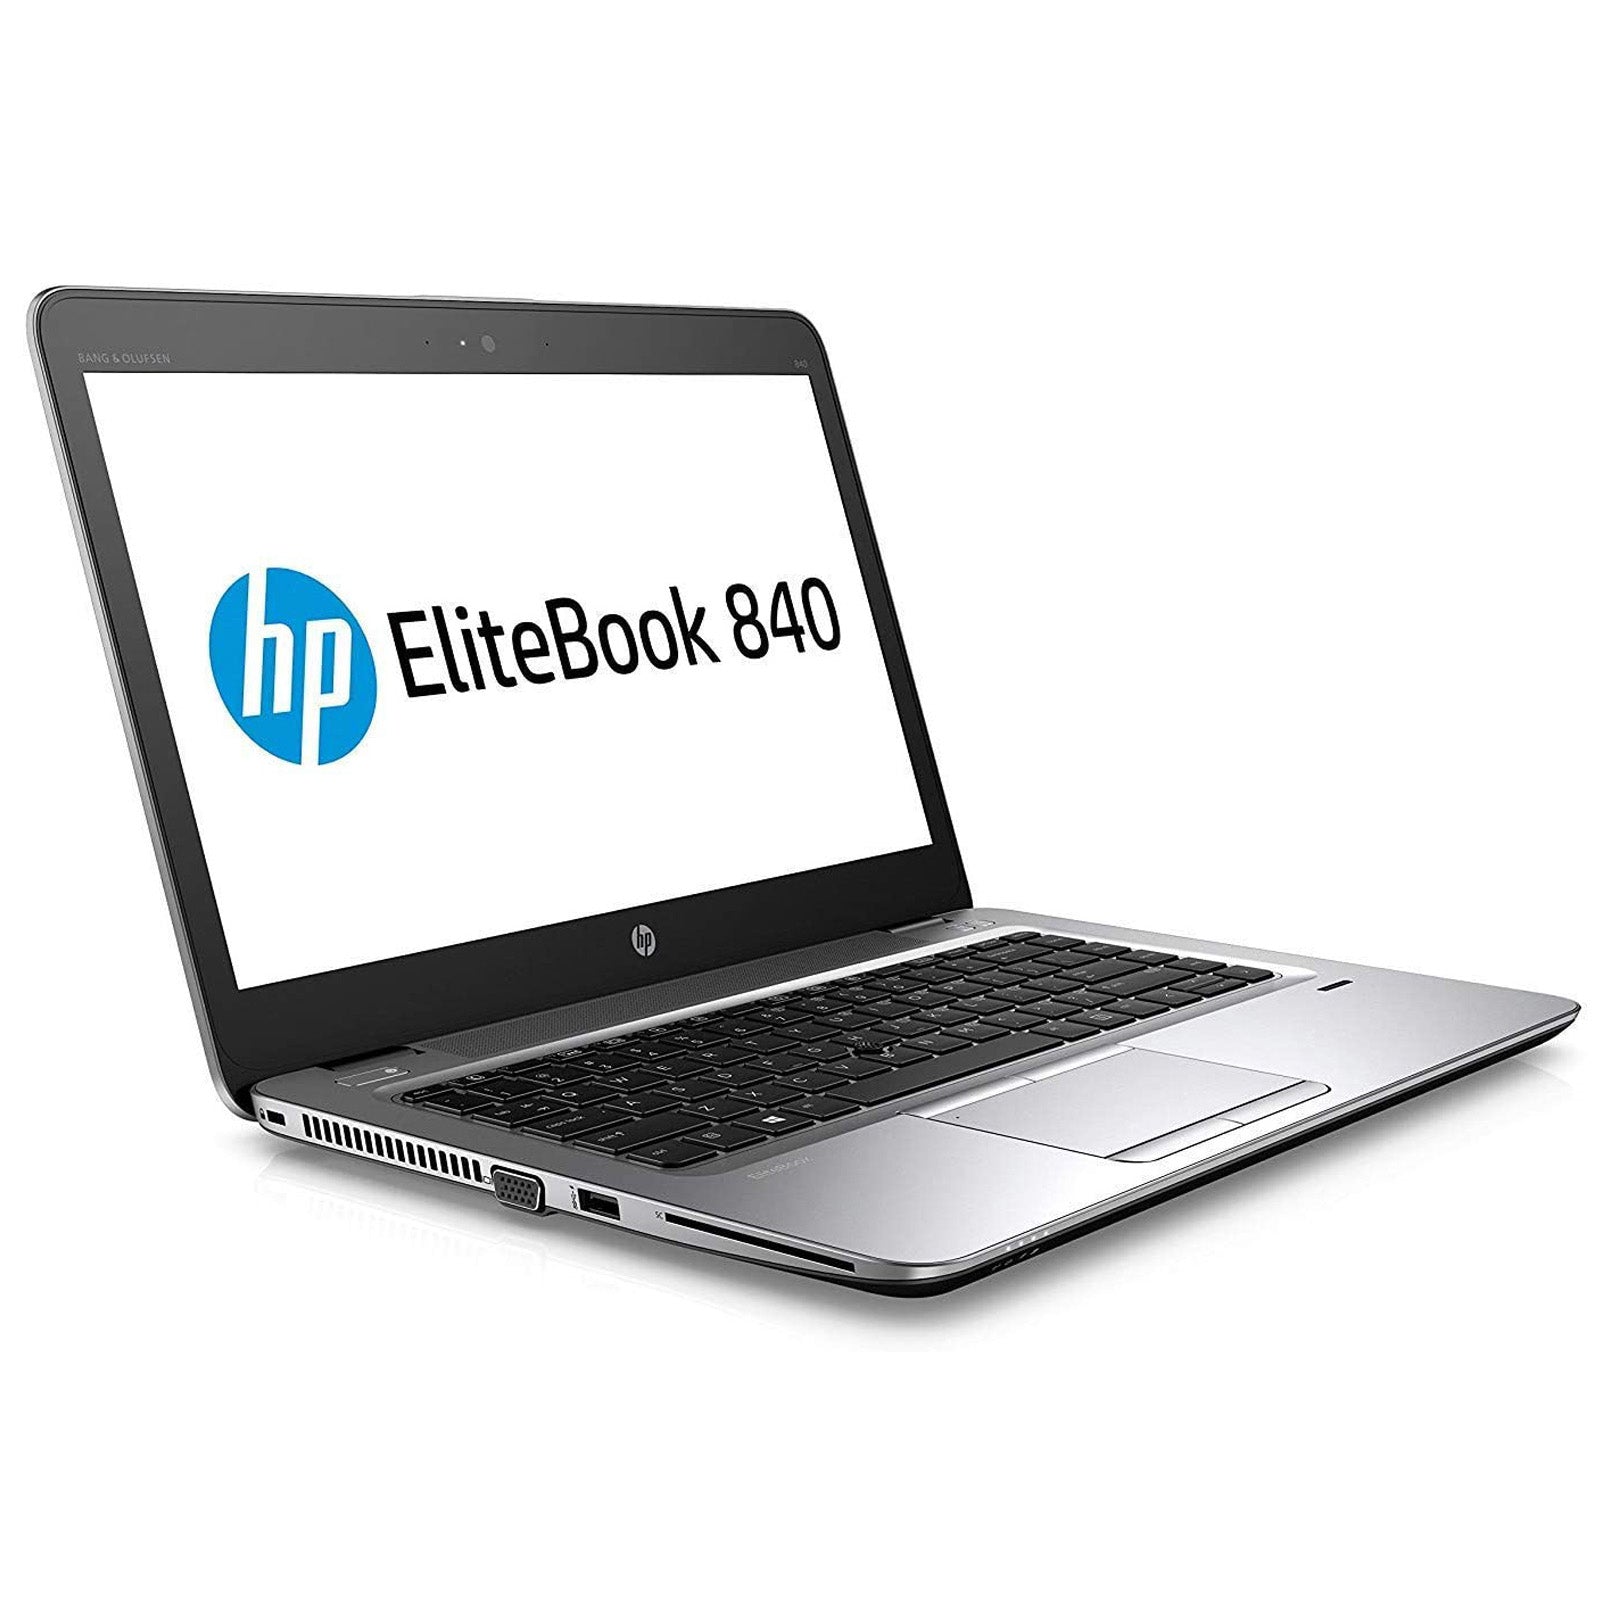 Laptop HP EliteBook 840 G4: 7th Gen Core i5 16GB RAM 256GB SSD Warranty, VAT